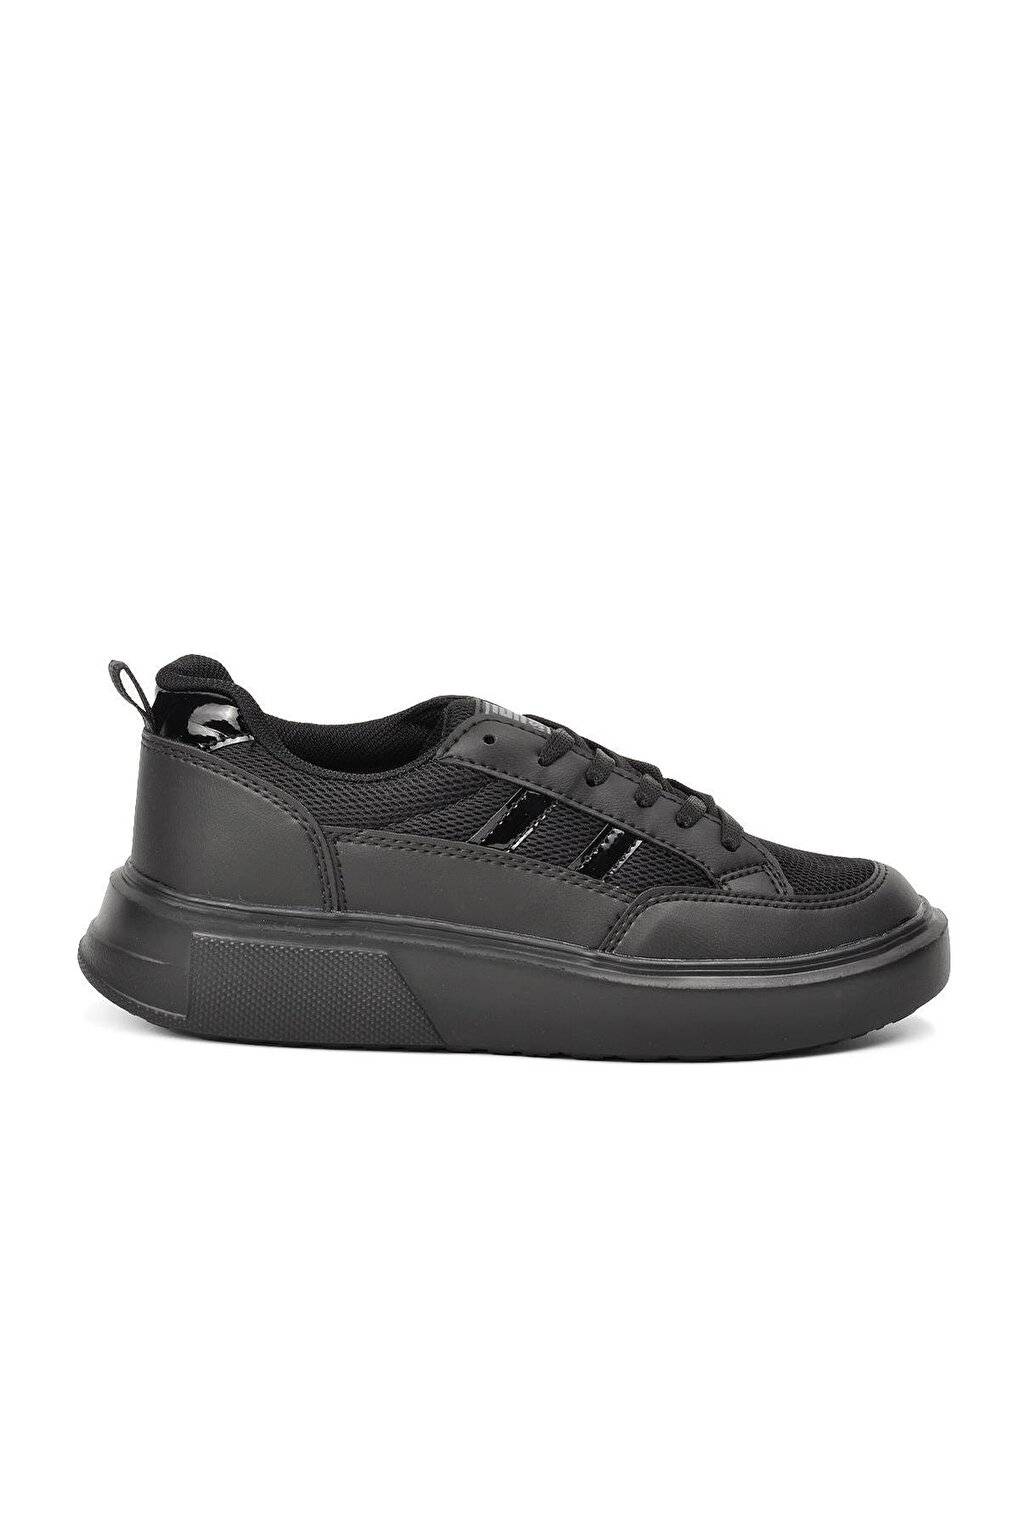 Черные спортивные туфли унисекс Deren Walkway